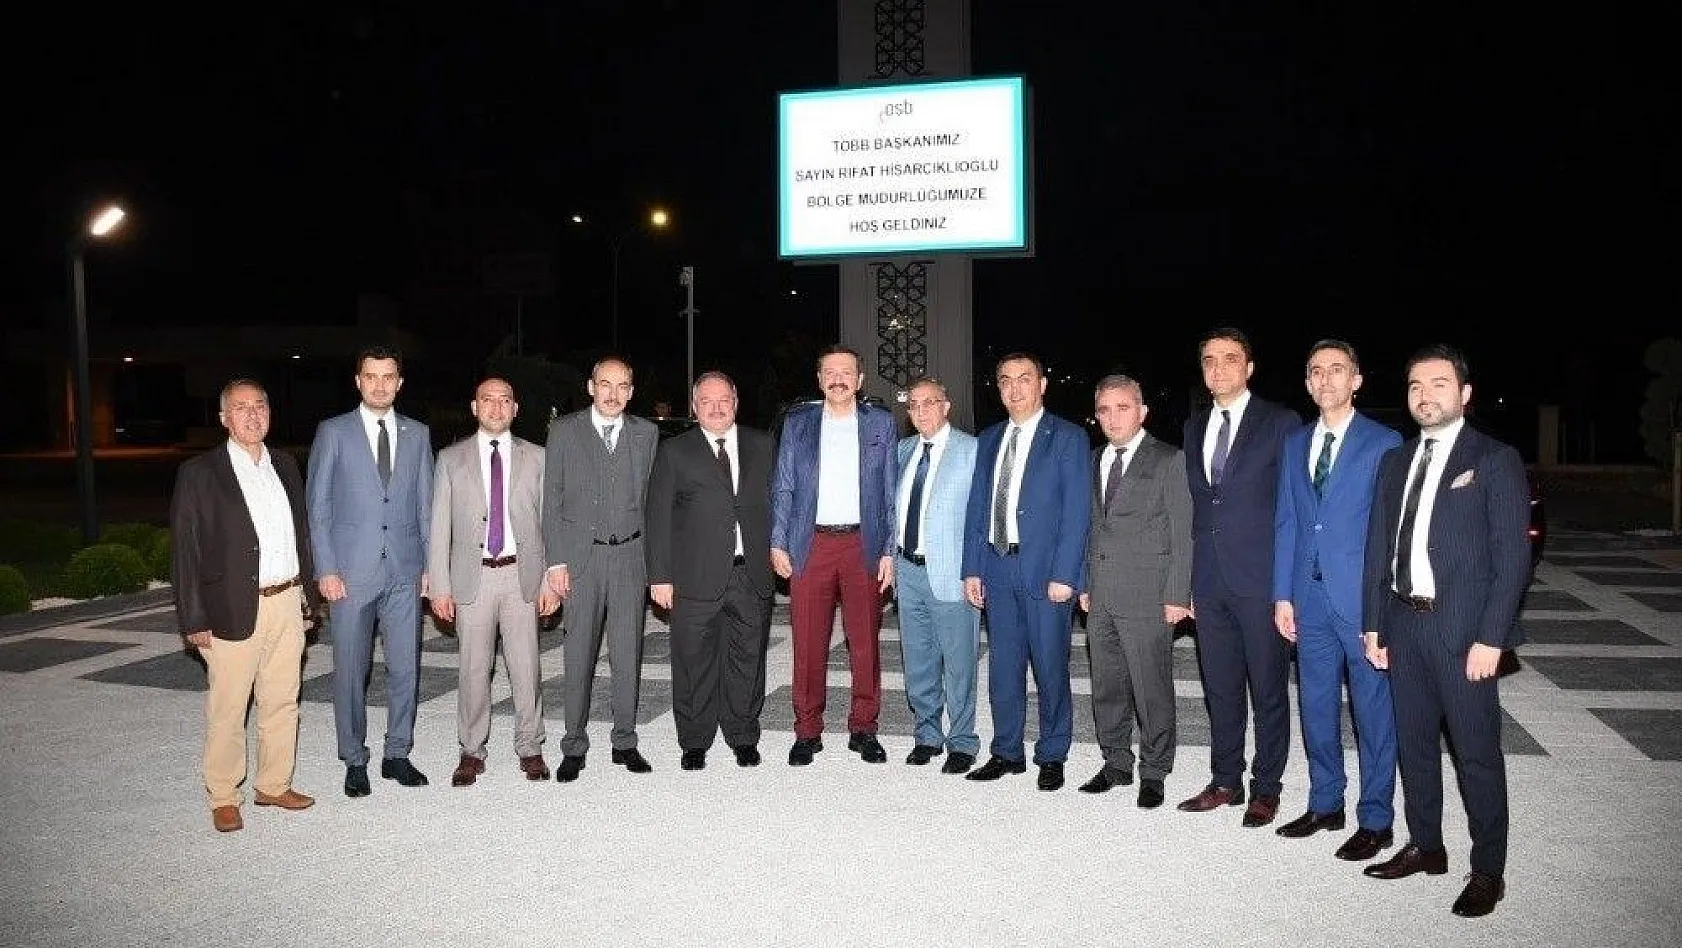 TOBB Başkanı Rifat Hisarcıklıoğlu'ndan Kayseri Osb'ye Ziyaret